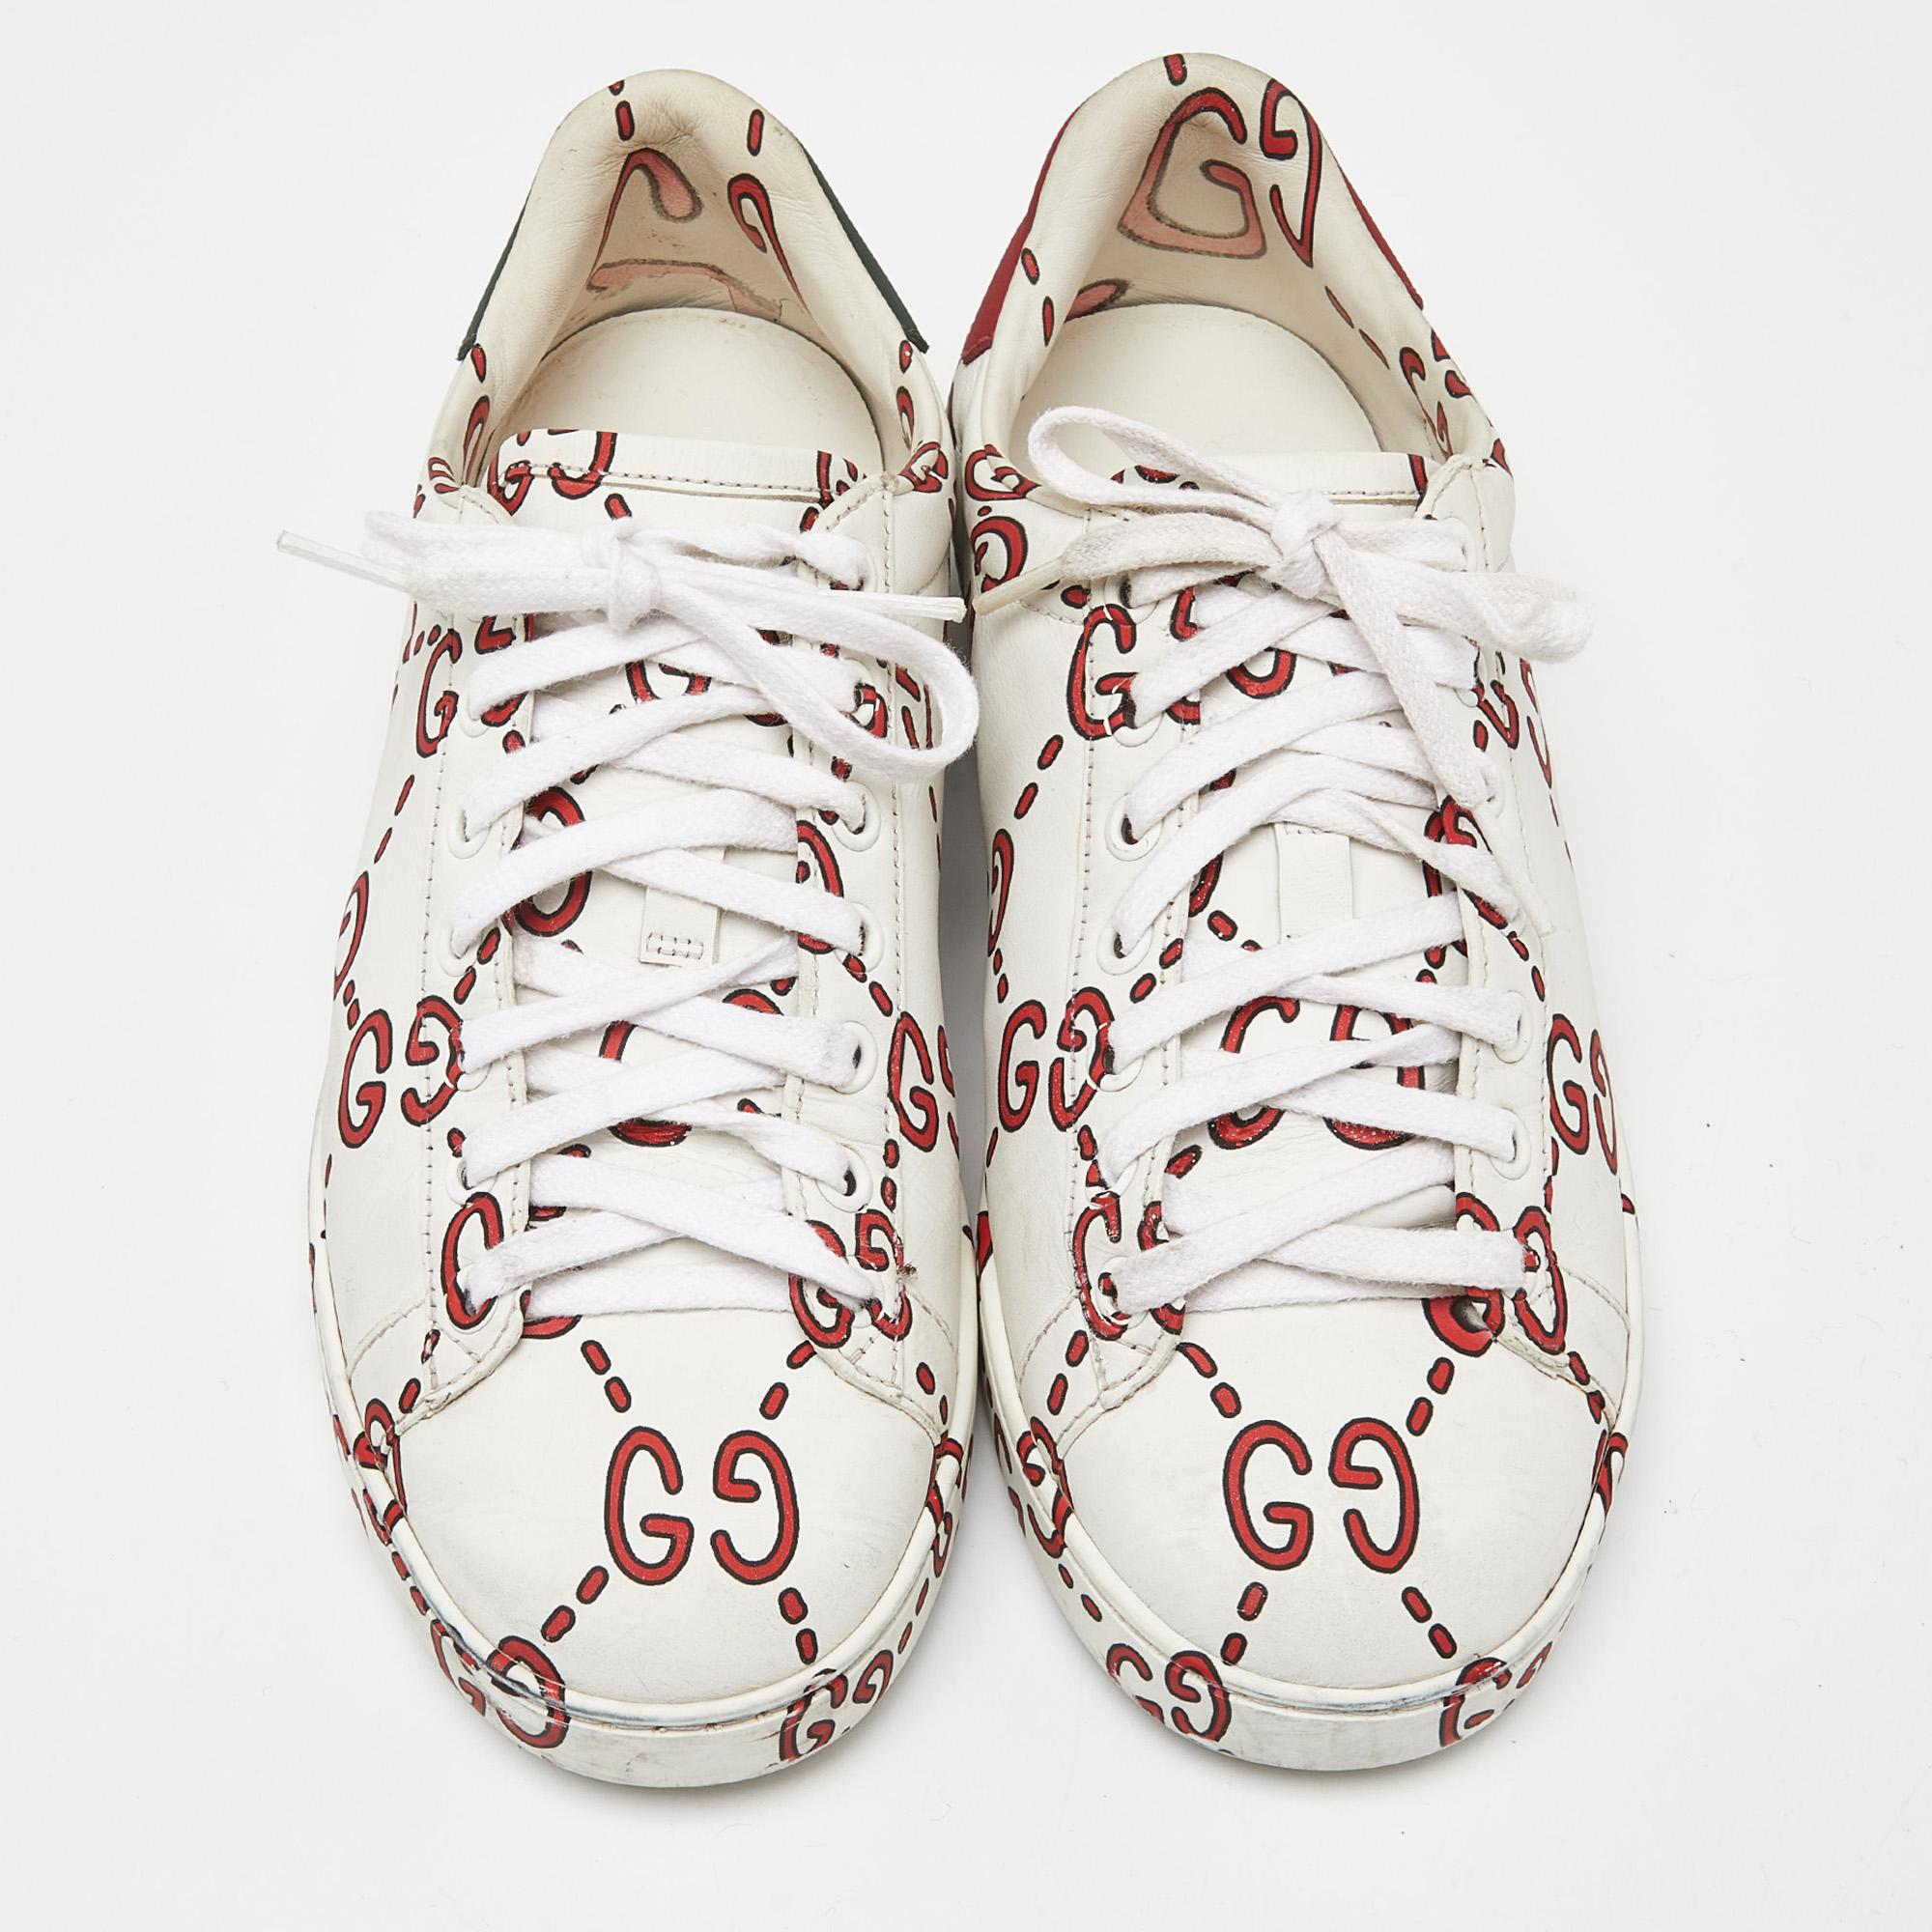 Die Ghost GG Ace Sneakers von Gucci vereinen zeitgenössischen Stil und zeitlose Handwerkskunst. Diese aus hochwertigem Leder gefertigten Sneaker bestechen durch ihr elegantes dreifarbiges Design mit dem kultigen GG-Motiv. Mit ihrer bequemen Passform